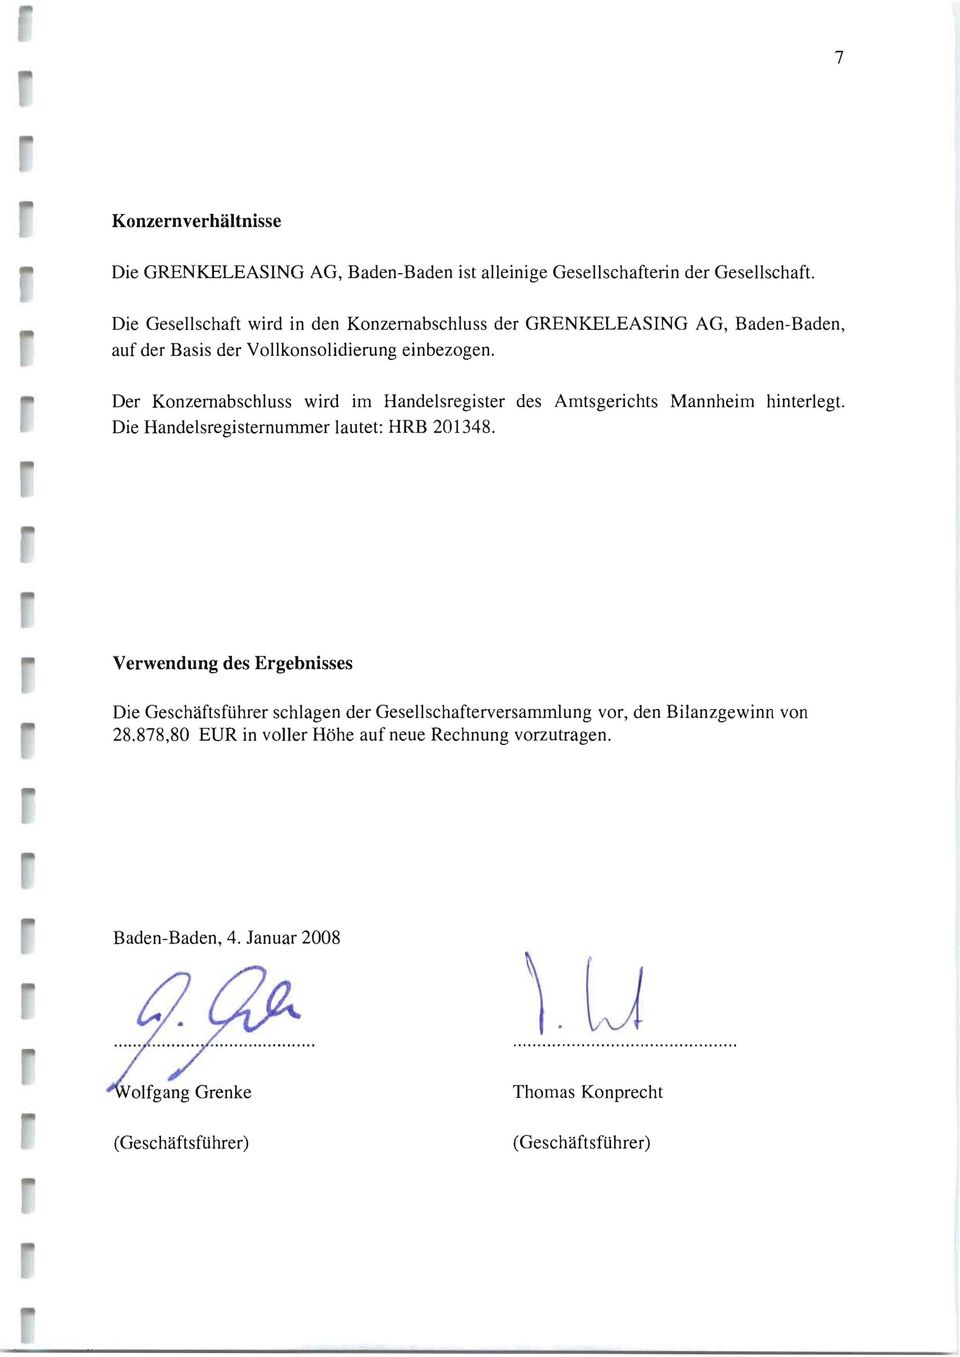 Der Konzemabschluss wird im Handelsregister des Amtsgerichts Mannheim hinterlegt. Die Handelsregisternununer lautet: HRB 201348.